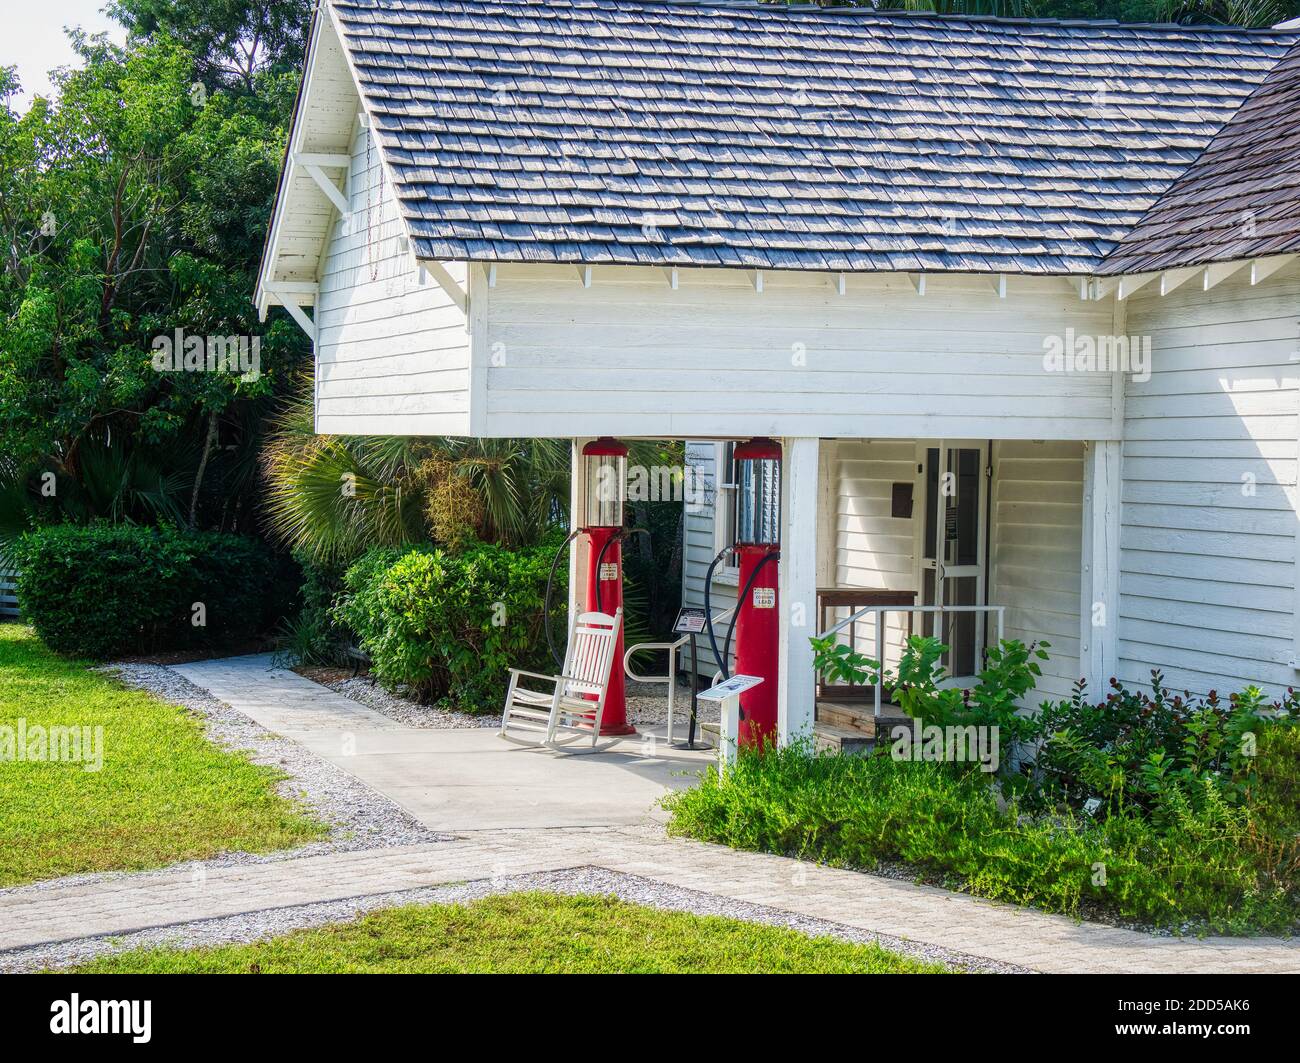 Baileys magasin général dans le village et le musée historique de Sanibel Sur l'île Sanibel sur la côte sud-ouest de la Floride dans Les États Unis Banque D'Images